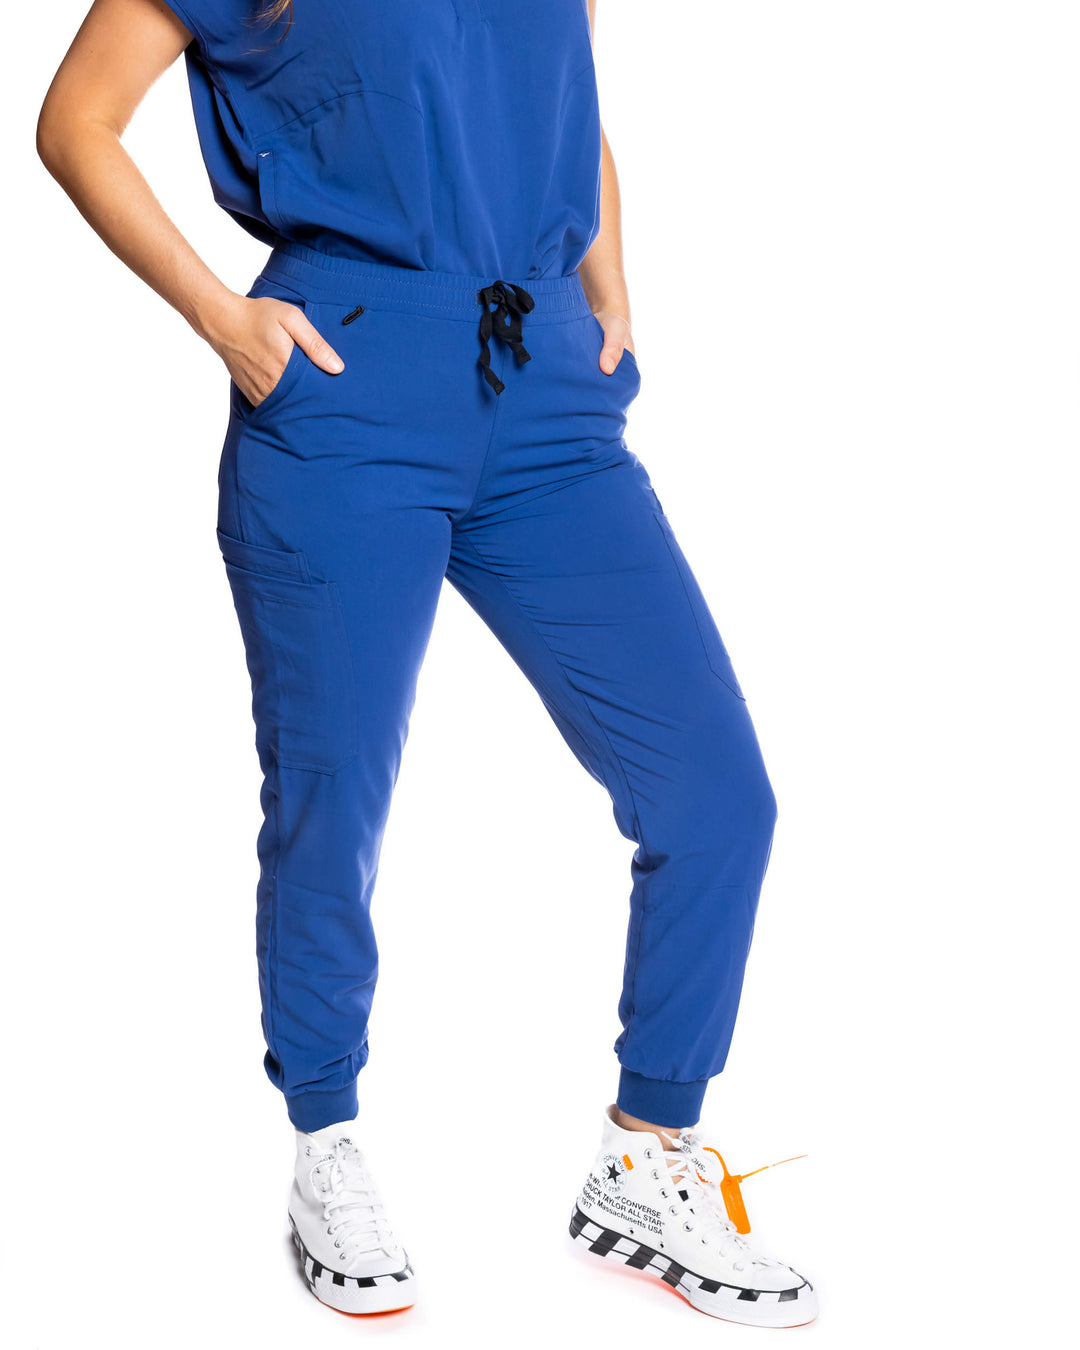 women's Navy Blue Jogger Scrub Pants - Jogger Scrubs by Millennials In Medicine (Mim Scrubs)